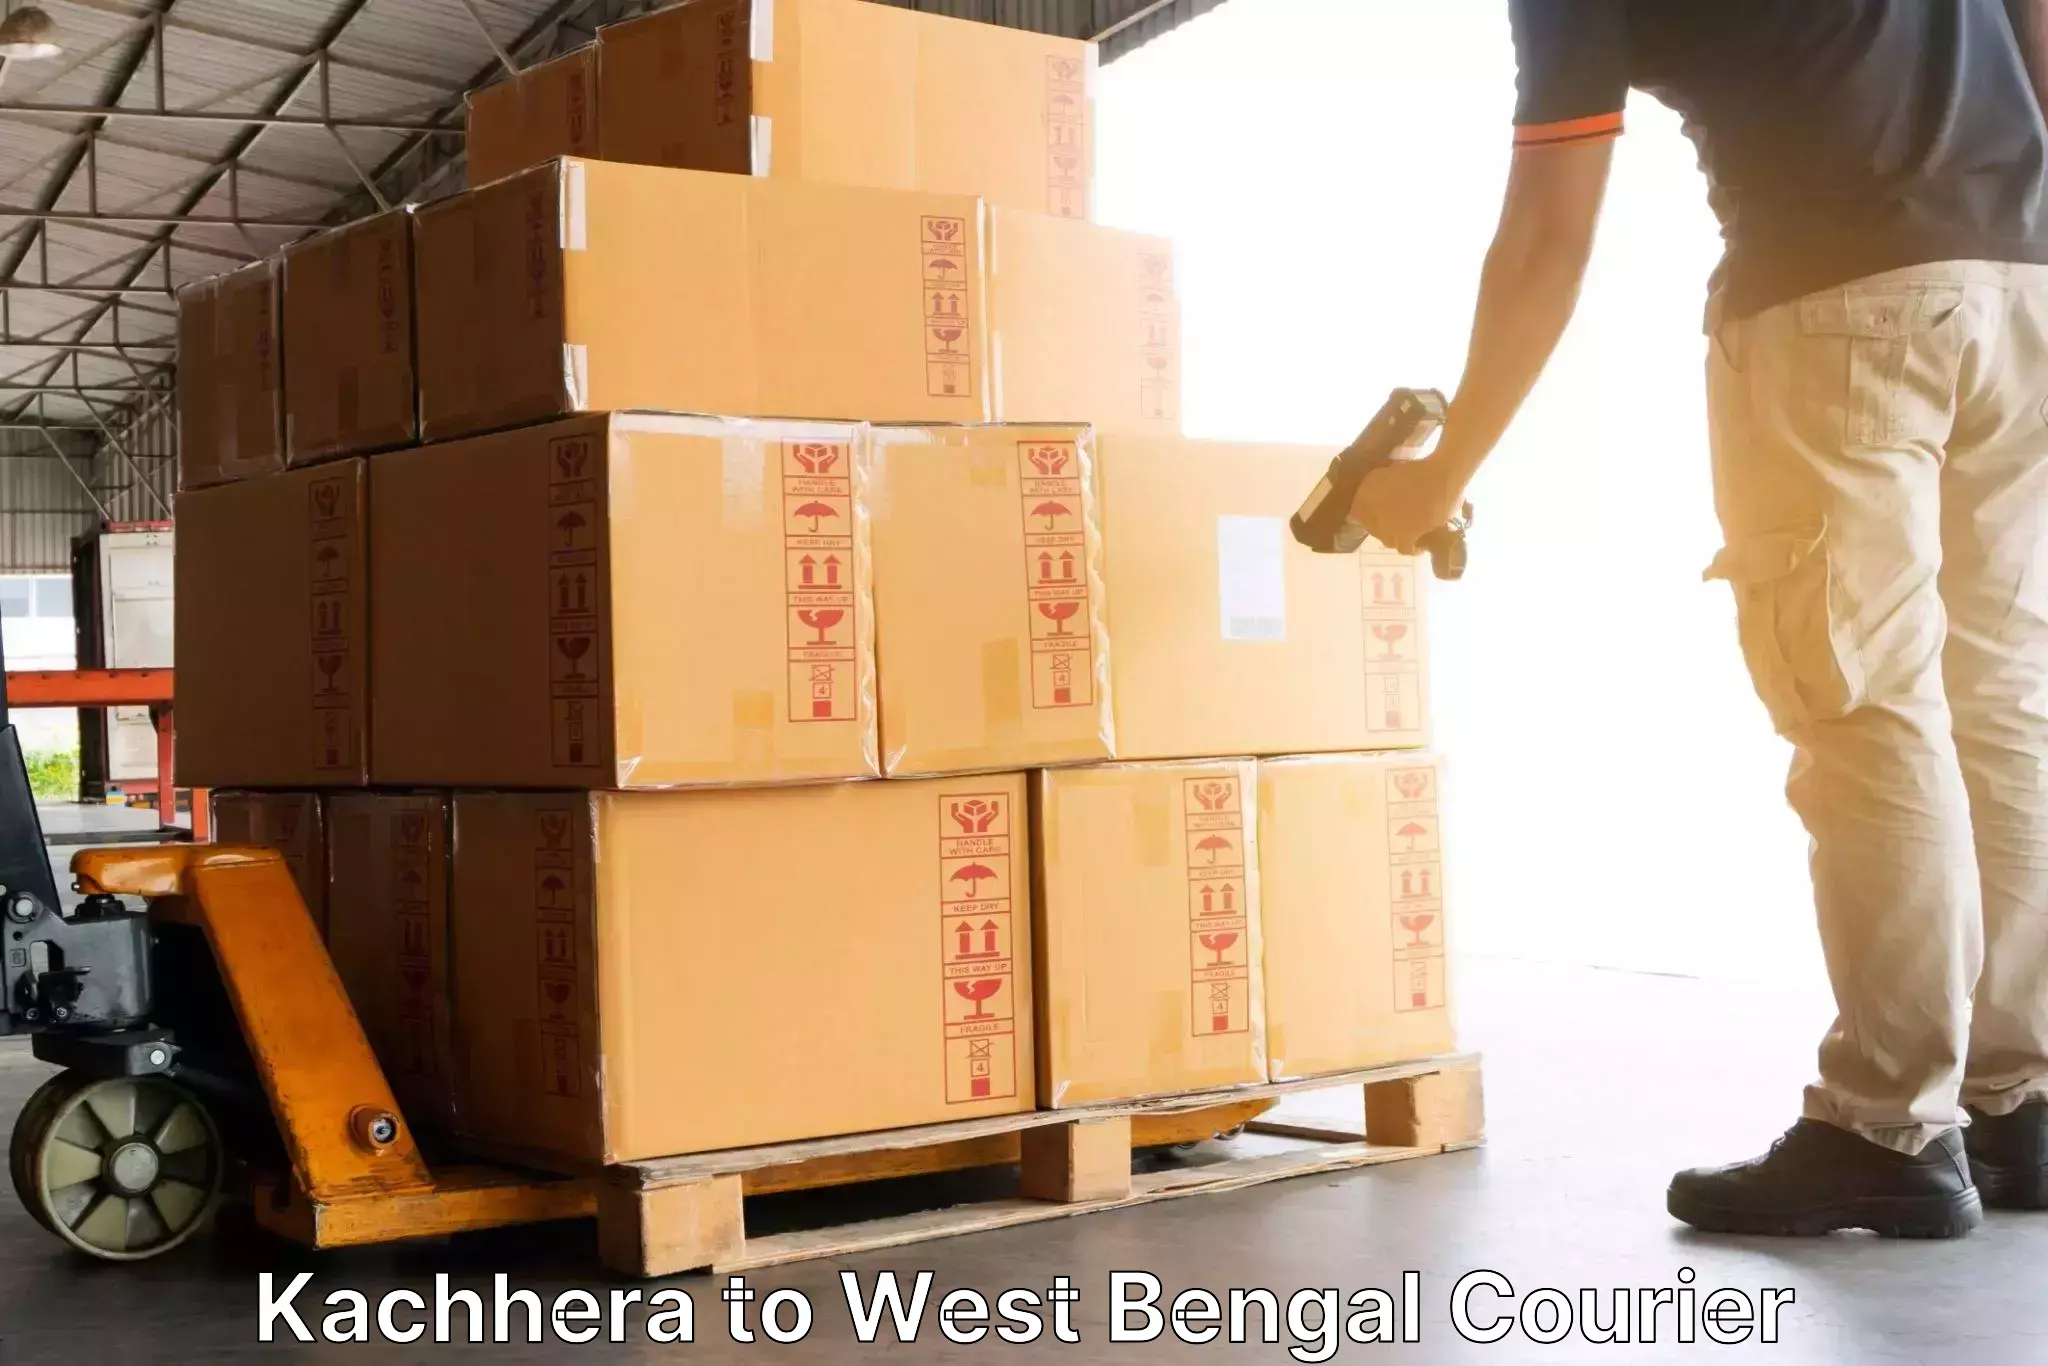 Modern courier technology Kachhera to West Bengal